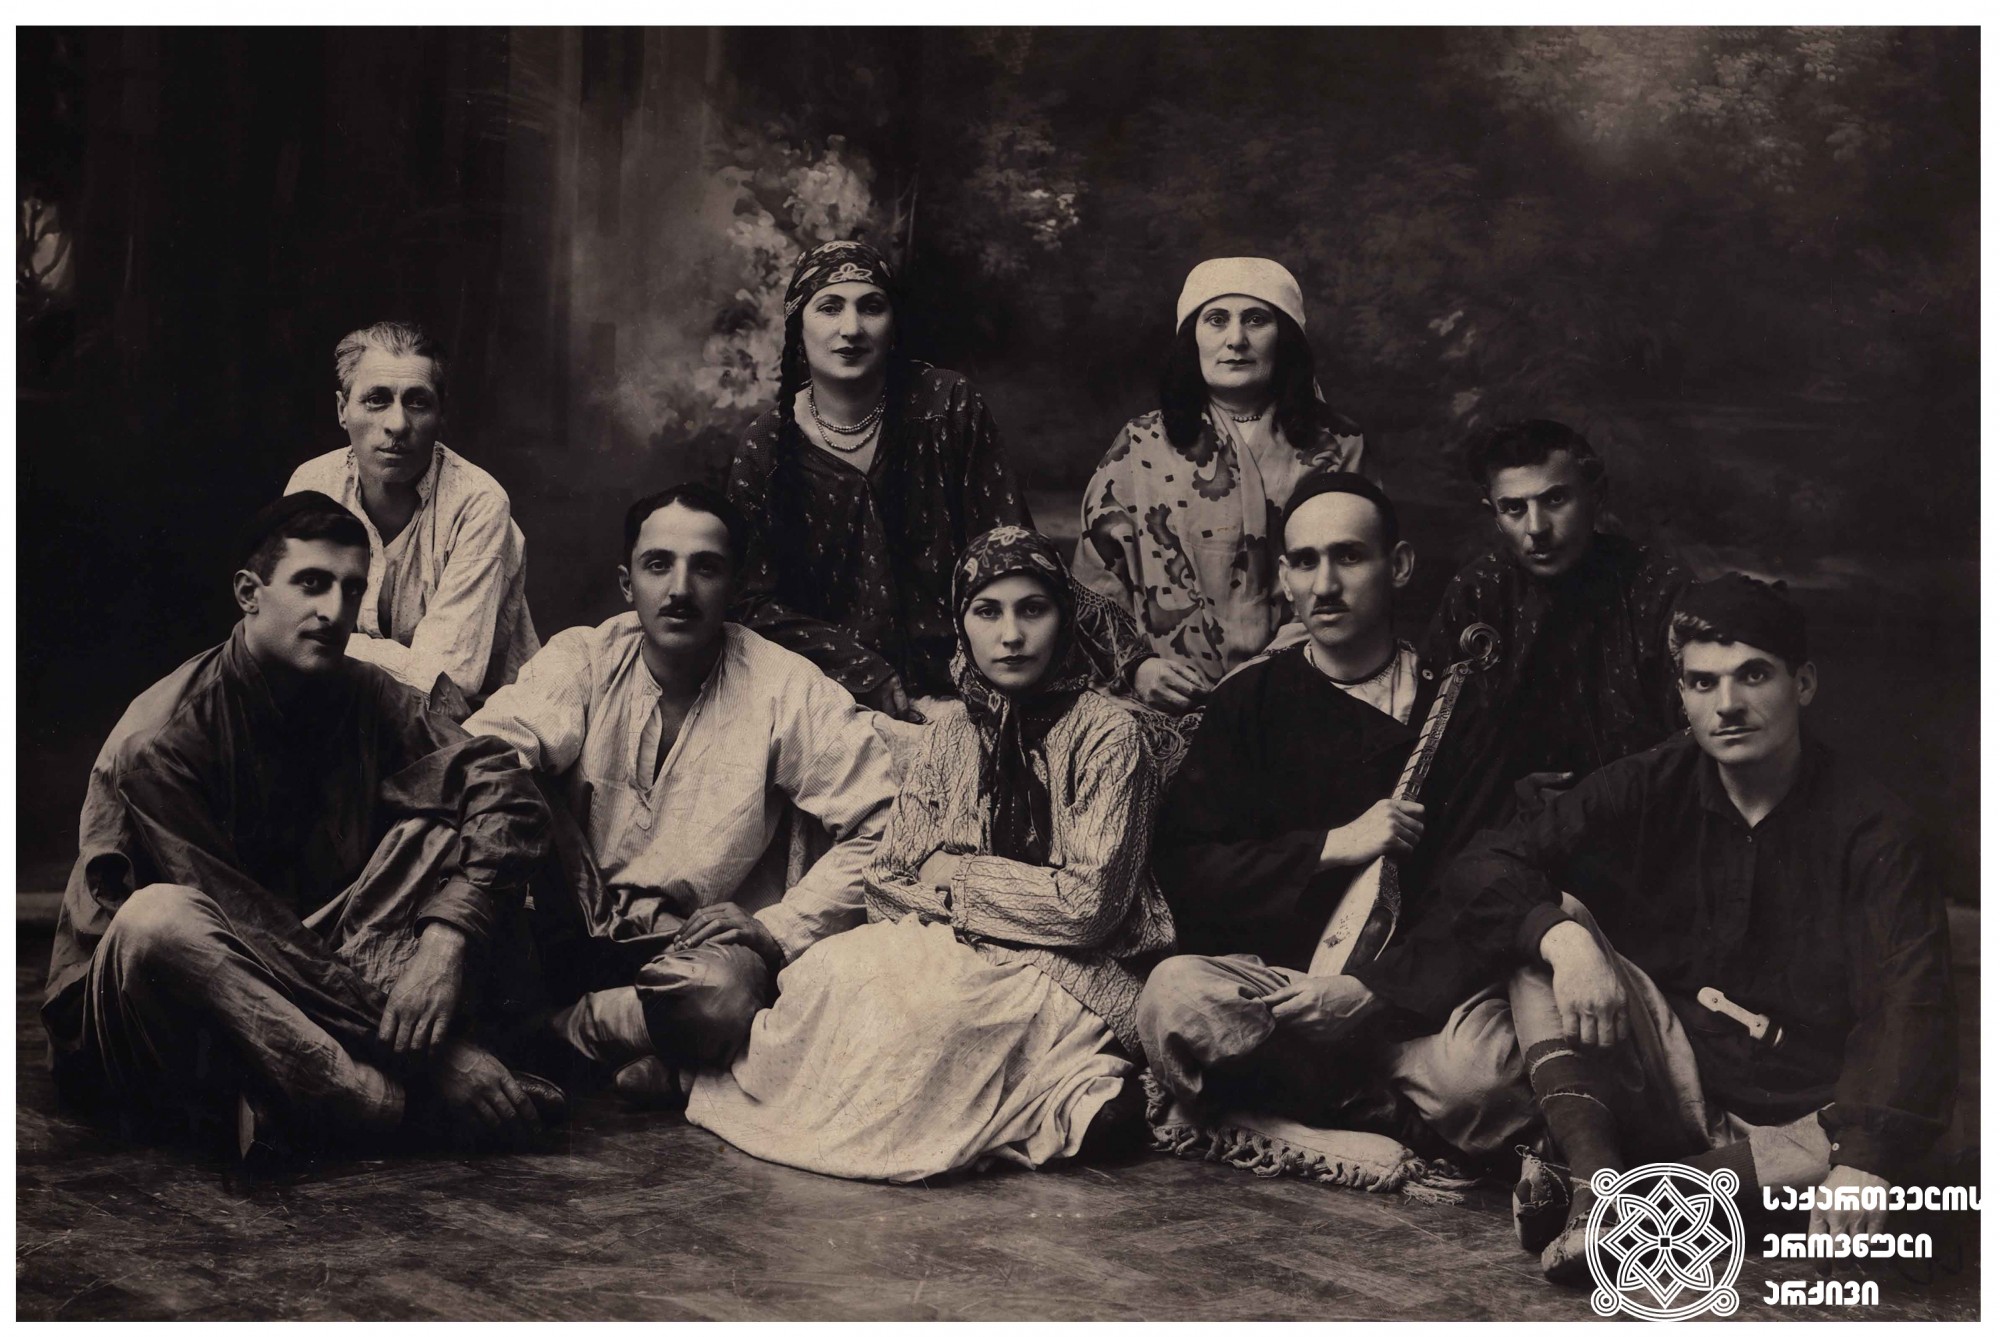 დები თარხნიშვილების ქართლ-კახური სიმღერების მომღერალთა გუნდი. <br>
1927 წელი.